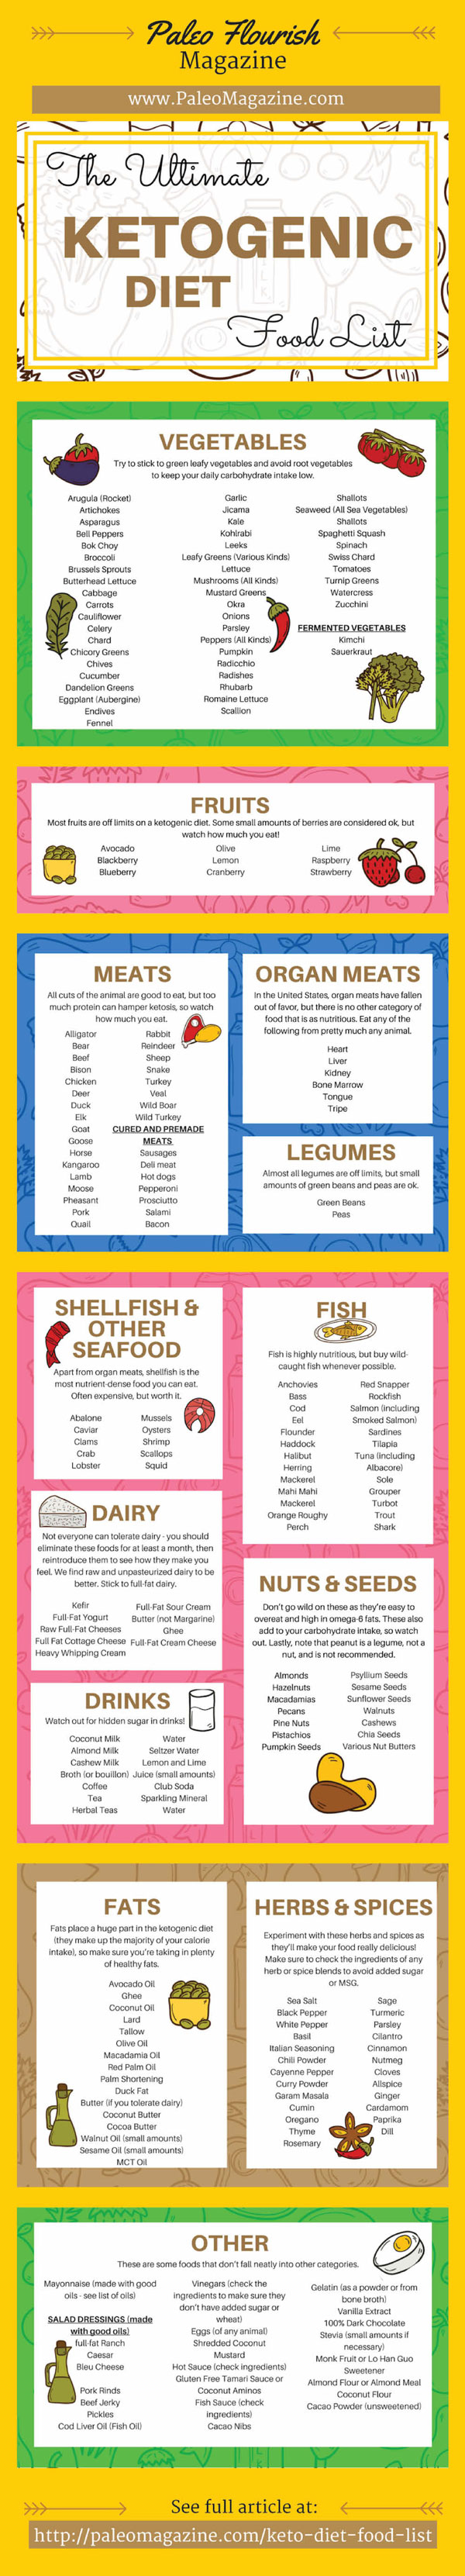 ketogenic diet food list pdf - Google Search | Food lists 